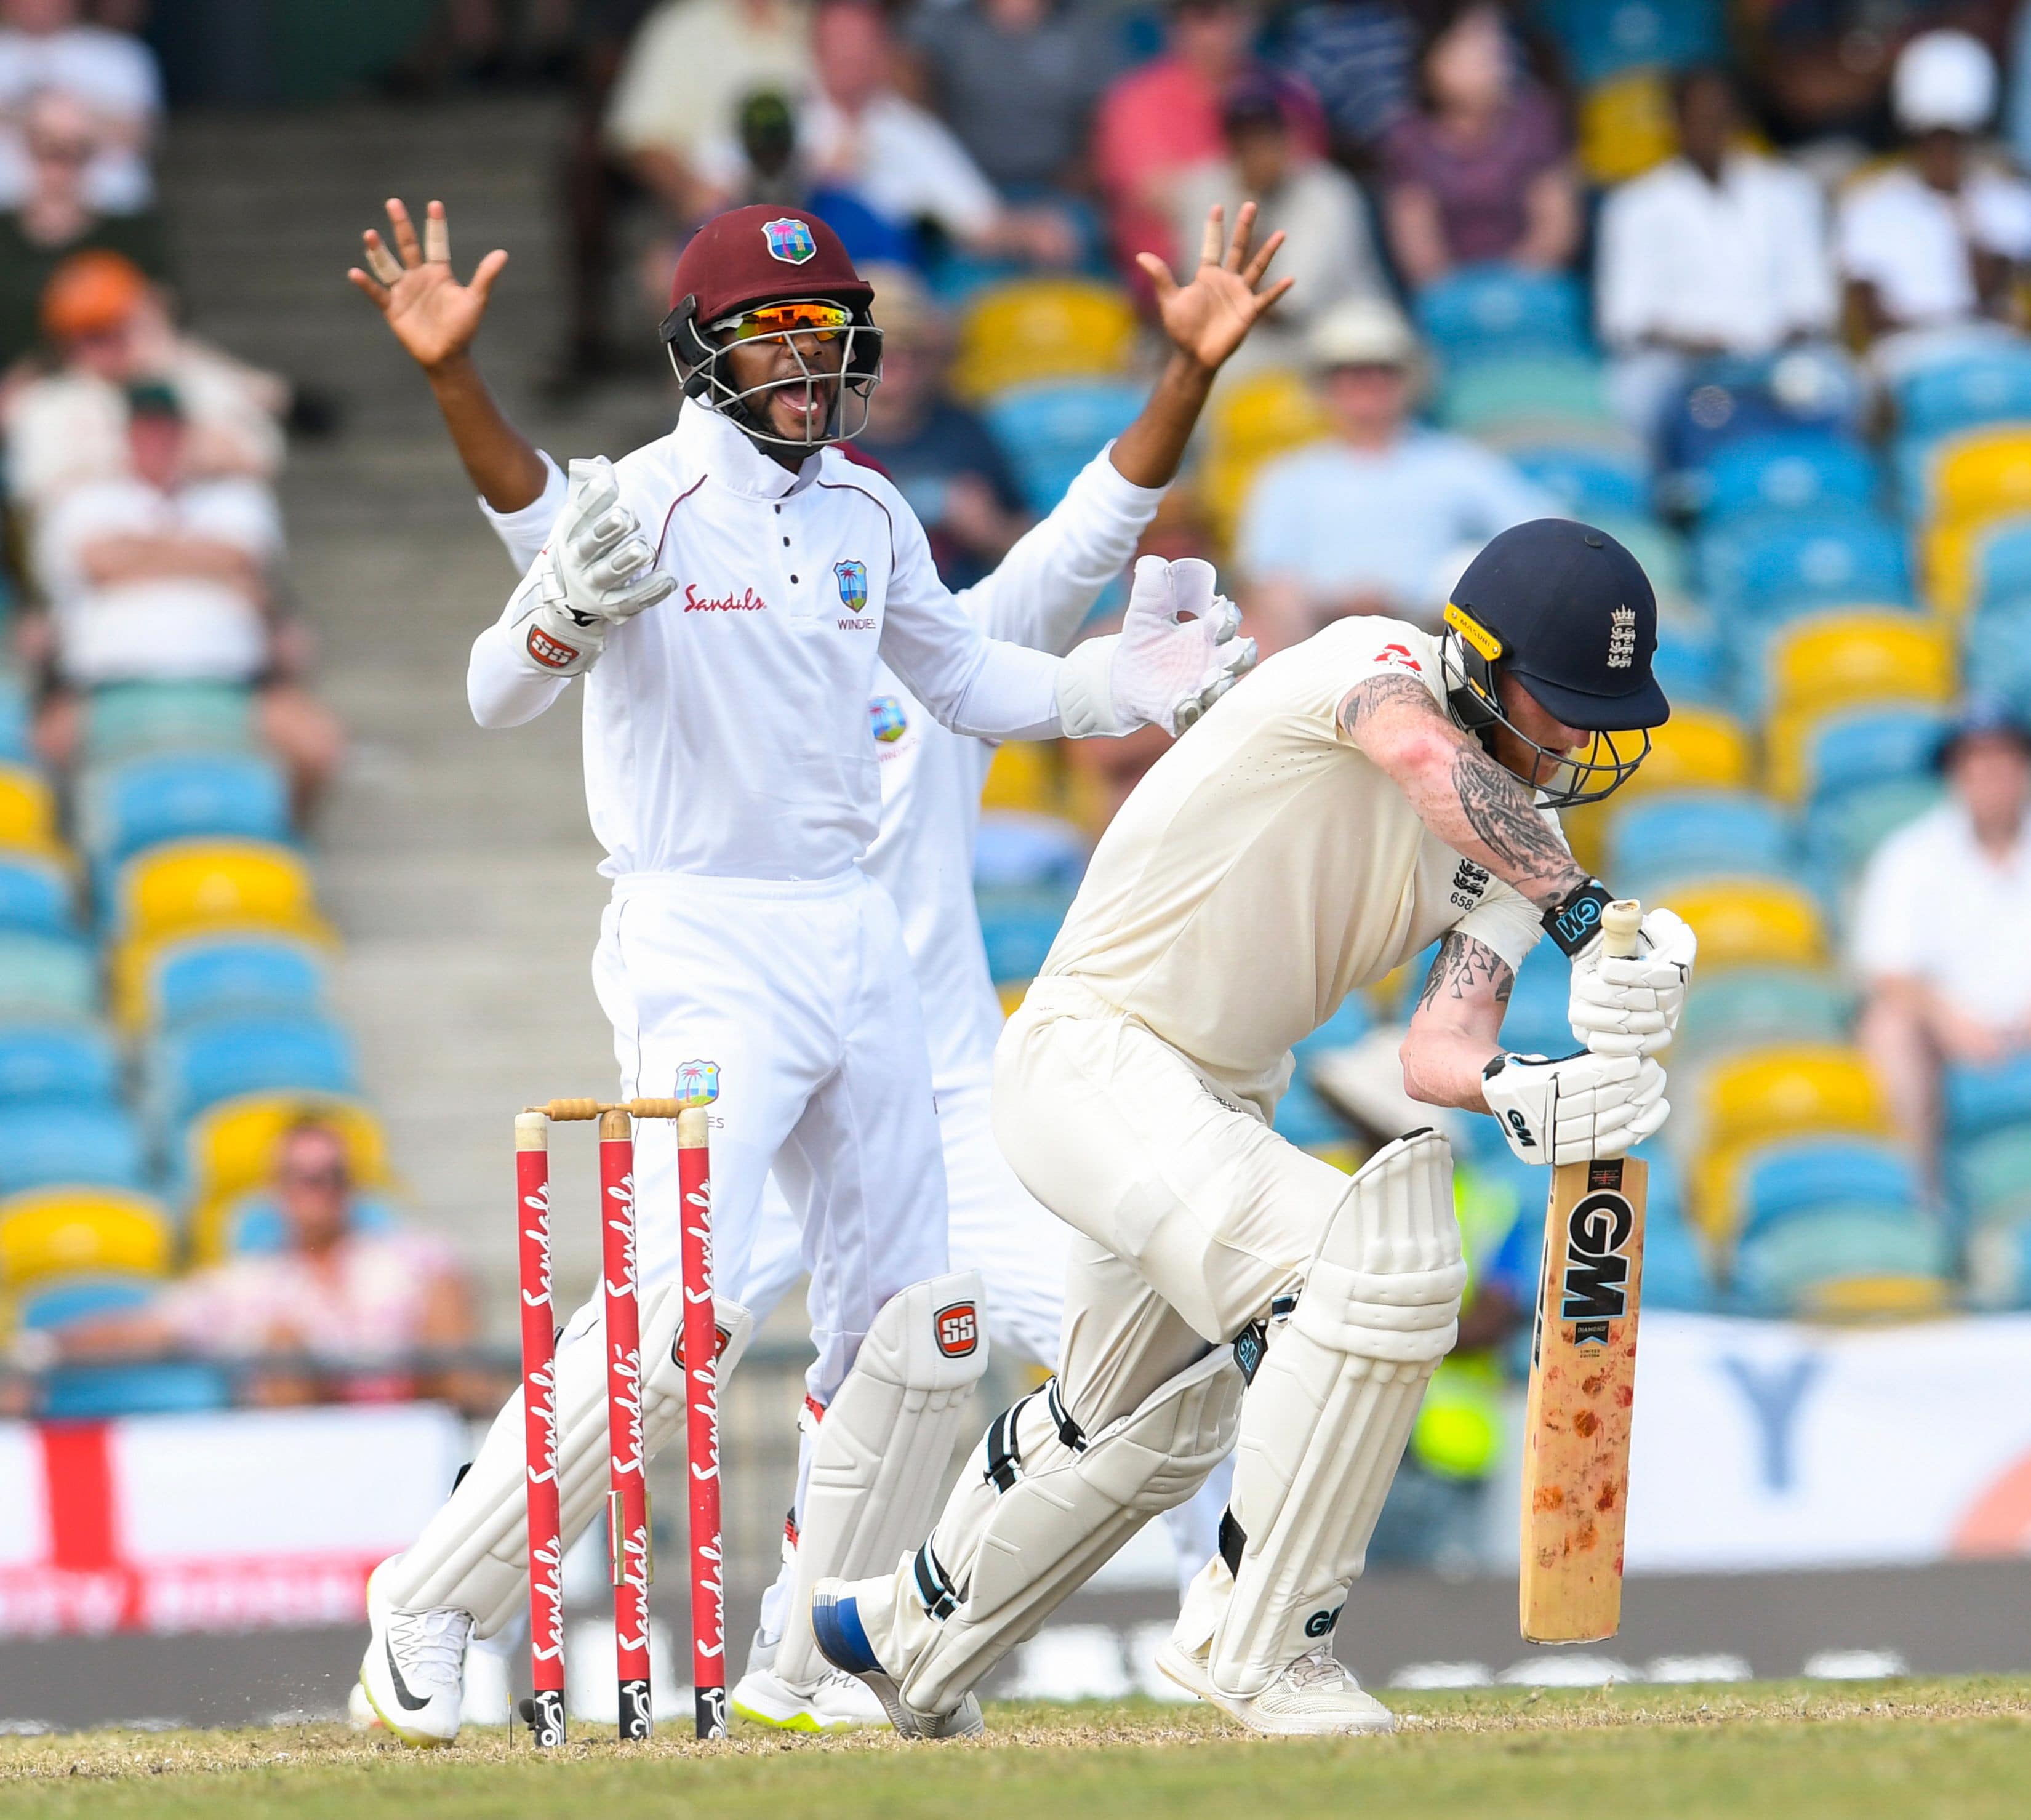 West Indies vs England - First Test in Bridgetown